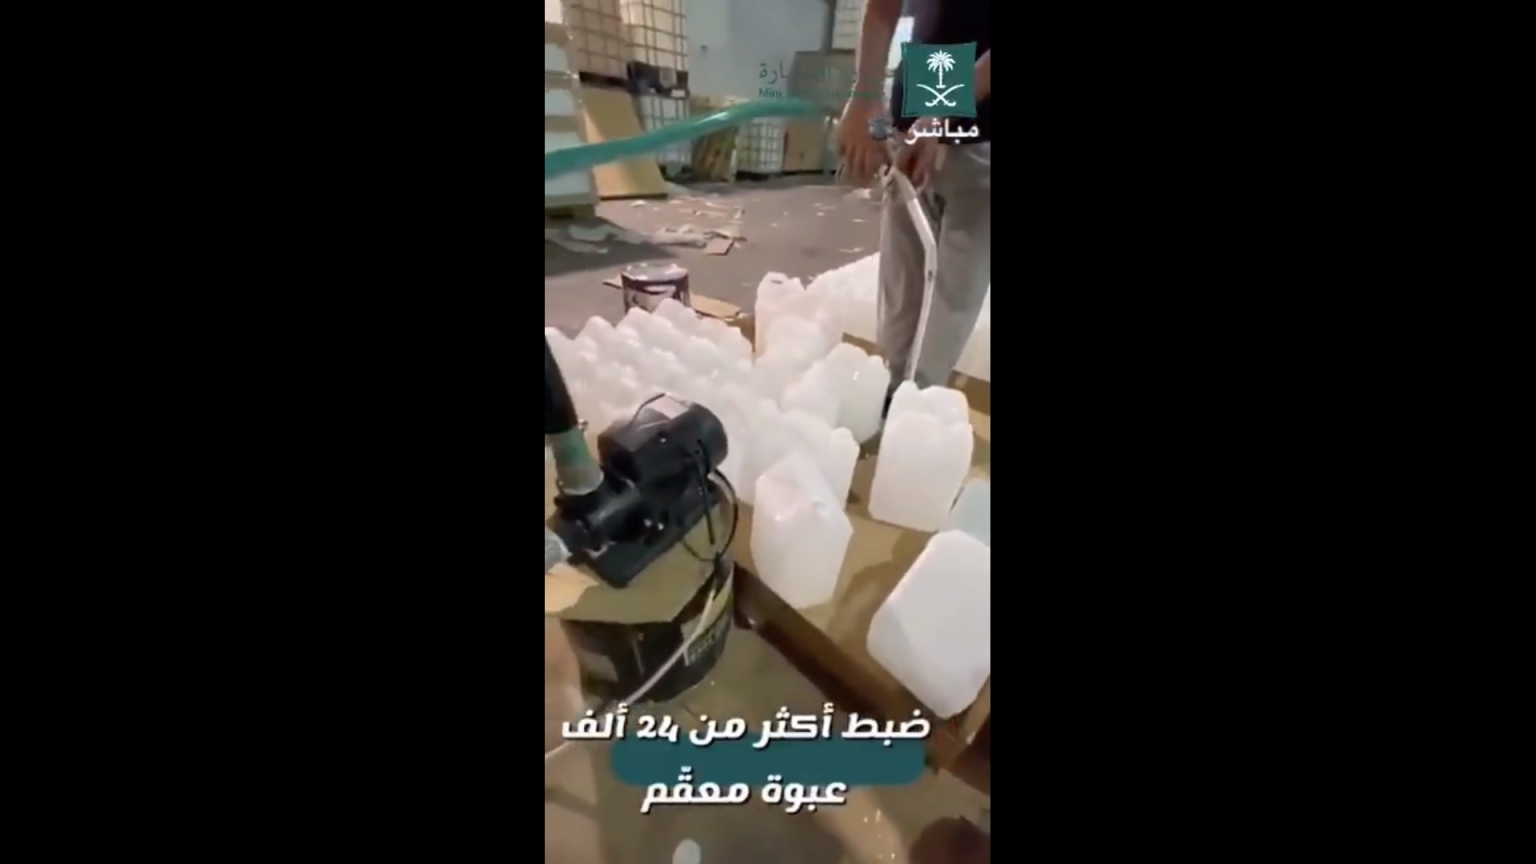 فيديو.. ضبط معمل يعبئ معقمات في عبوات منظف بلاط!